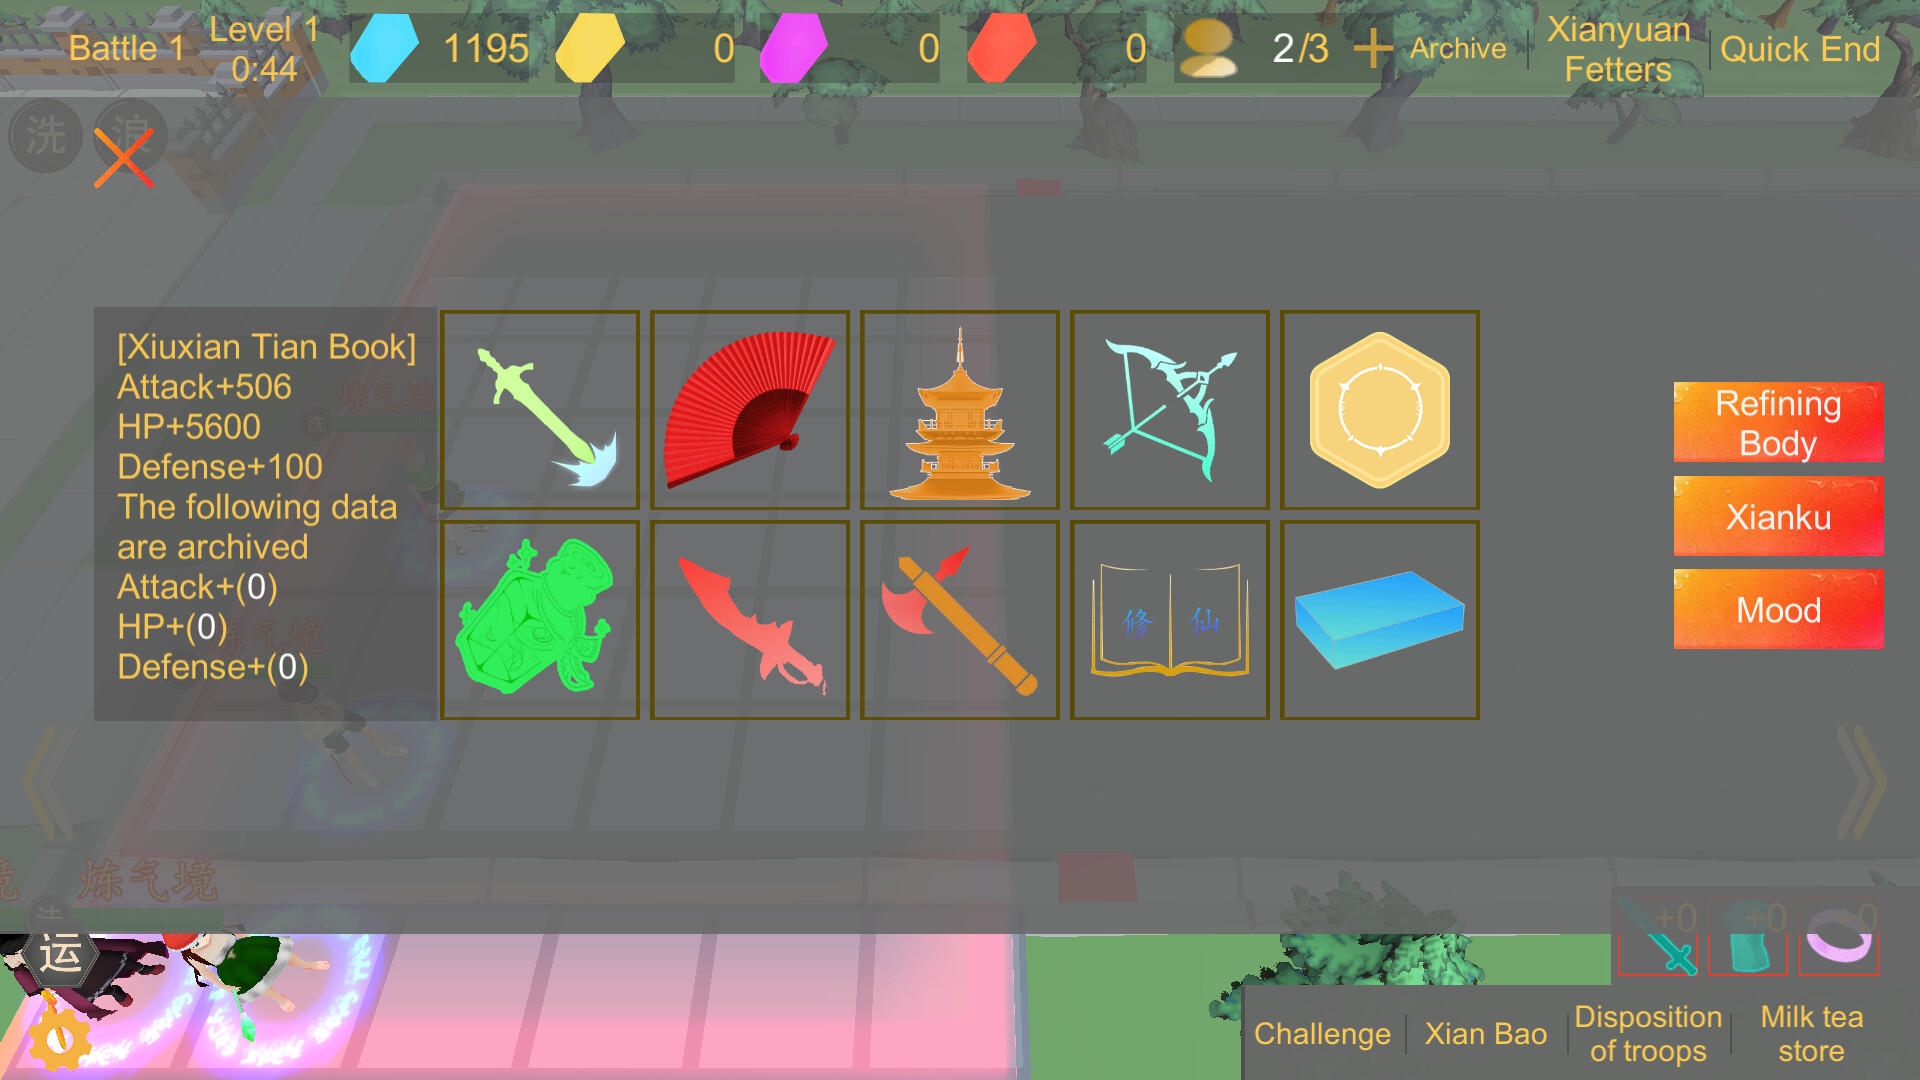 SHIJIE XIUXIAN screenshot game